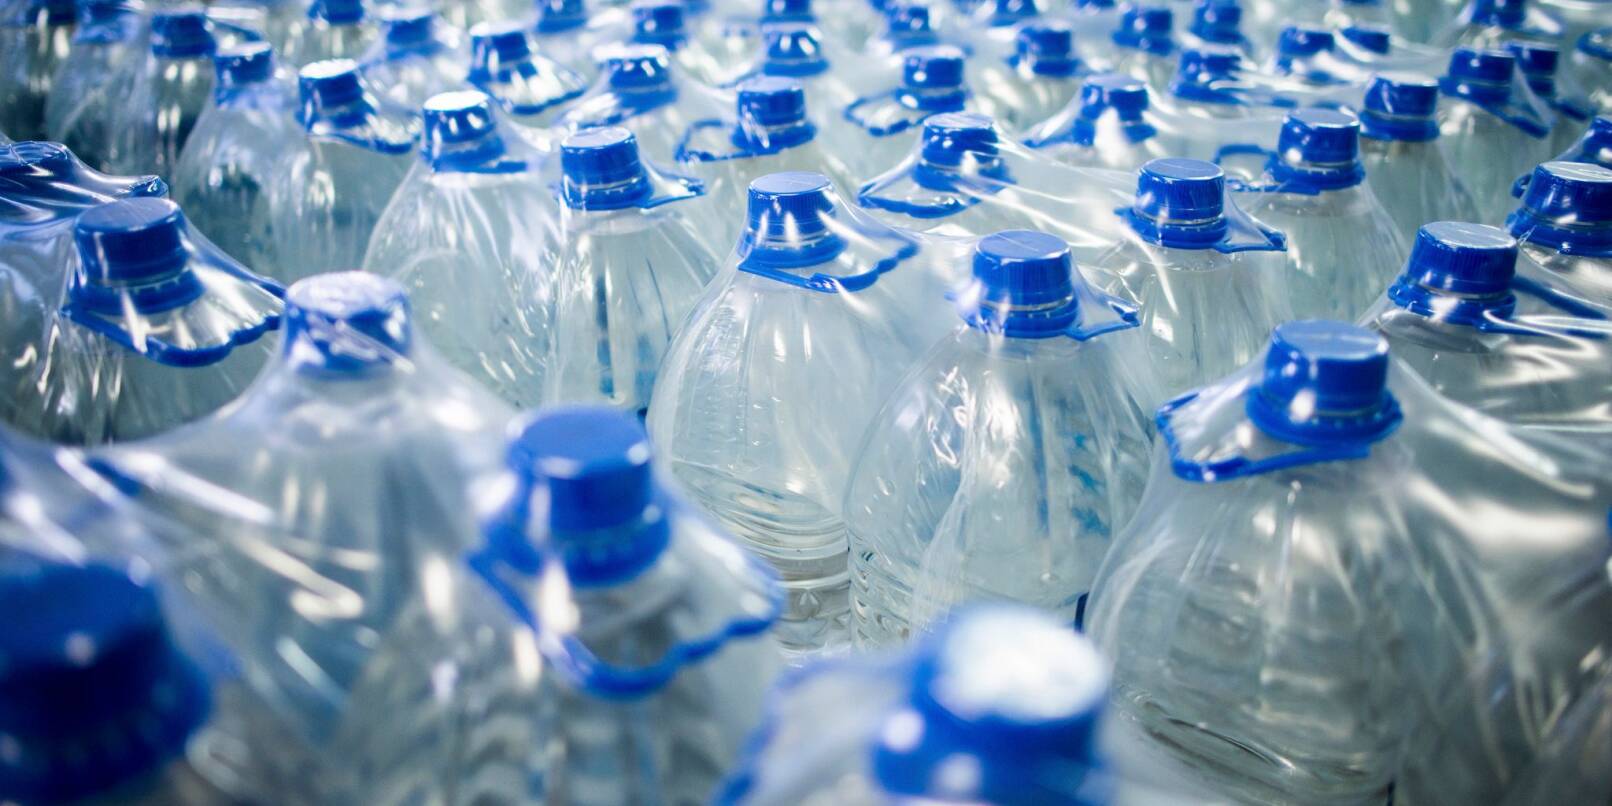 Wasserflaschen stehen in einer Fabrik zur Produktion von Mineralwasser.